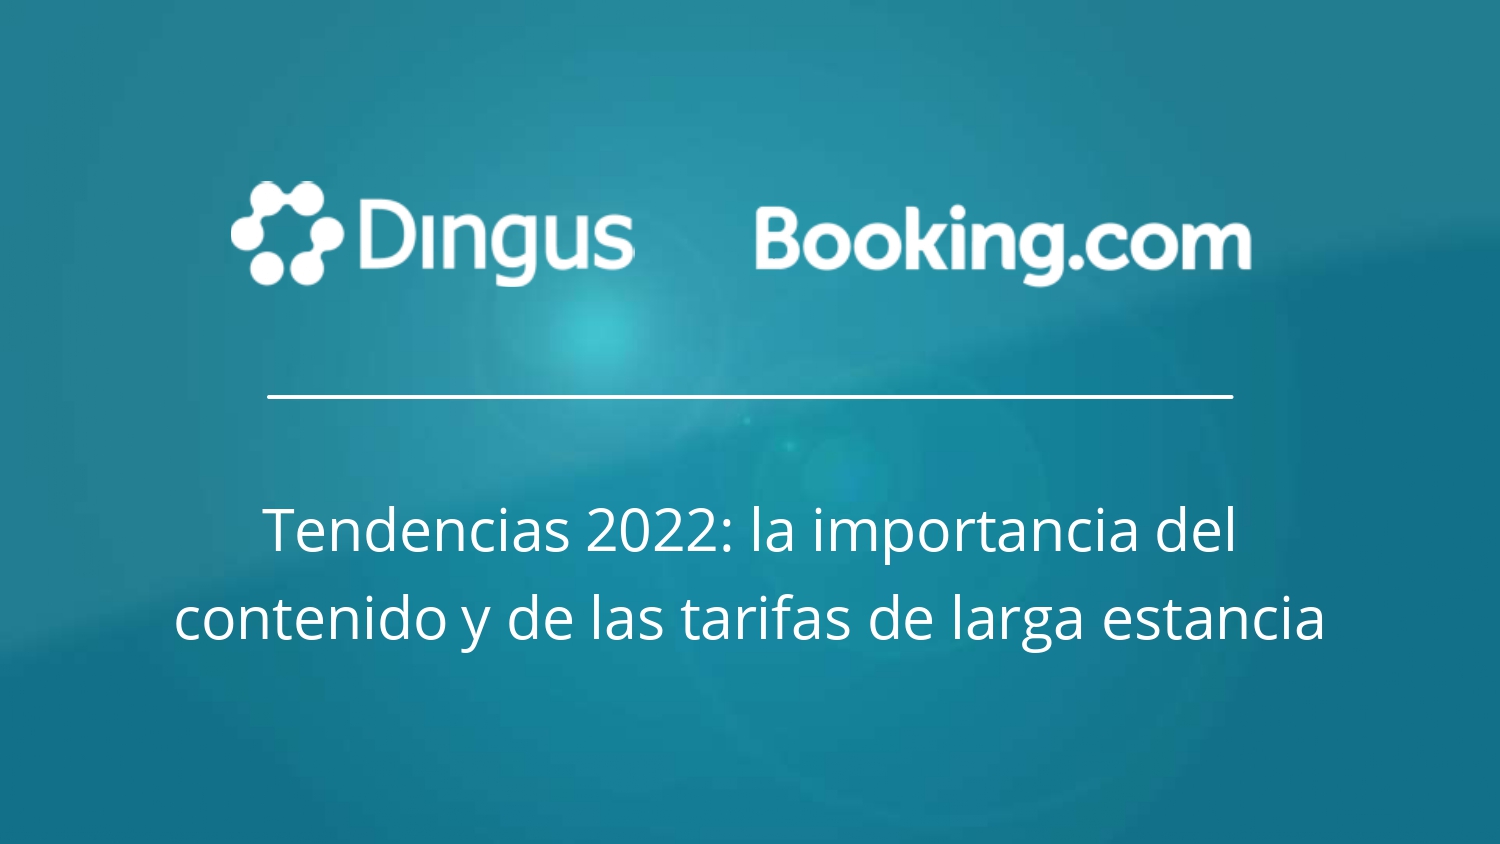 Algunas tendencias para este 2022 analizadas por Dingus y Booking.com